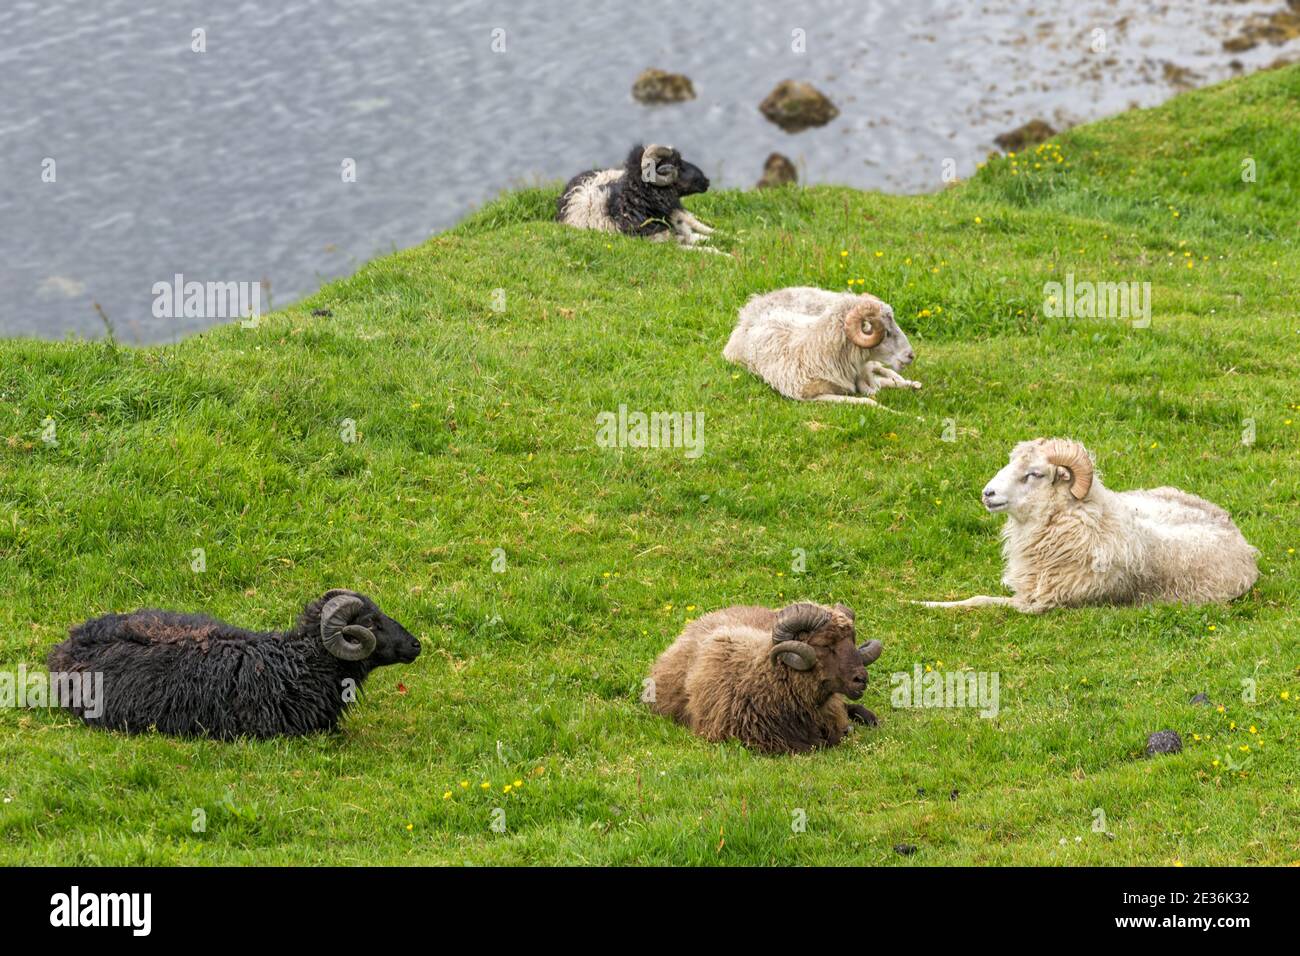 Mâle (béliers), mouton féroïen, type de mouton à queue courte d'Europe du Nord, île d'Eysturoy, îles Féroé Banque D'Images